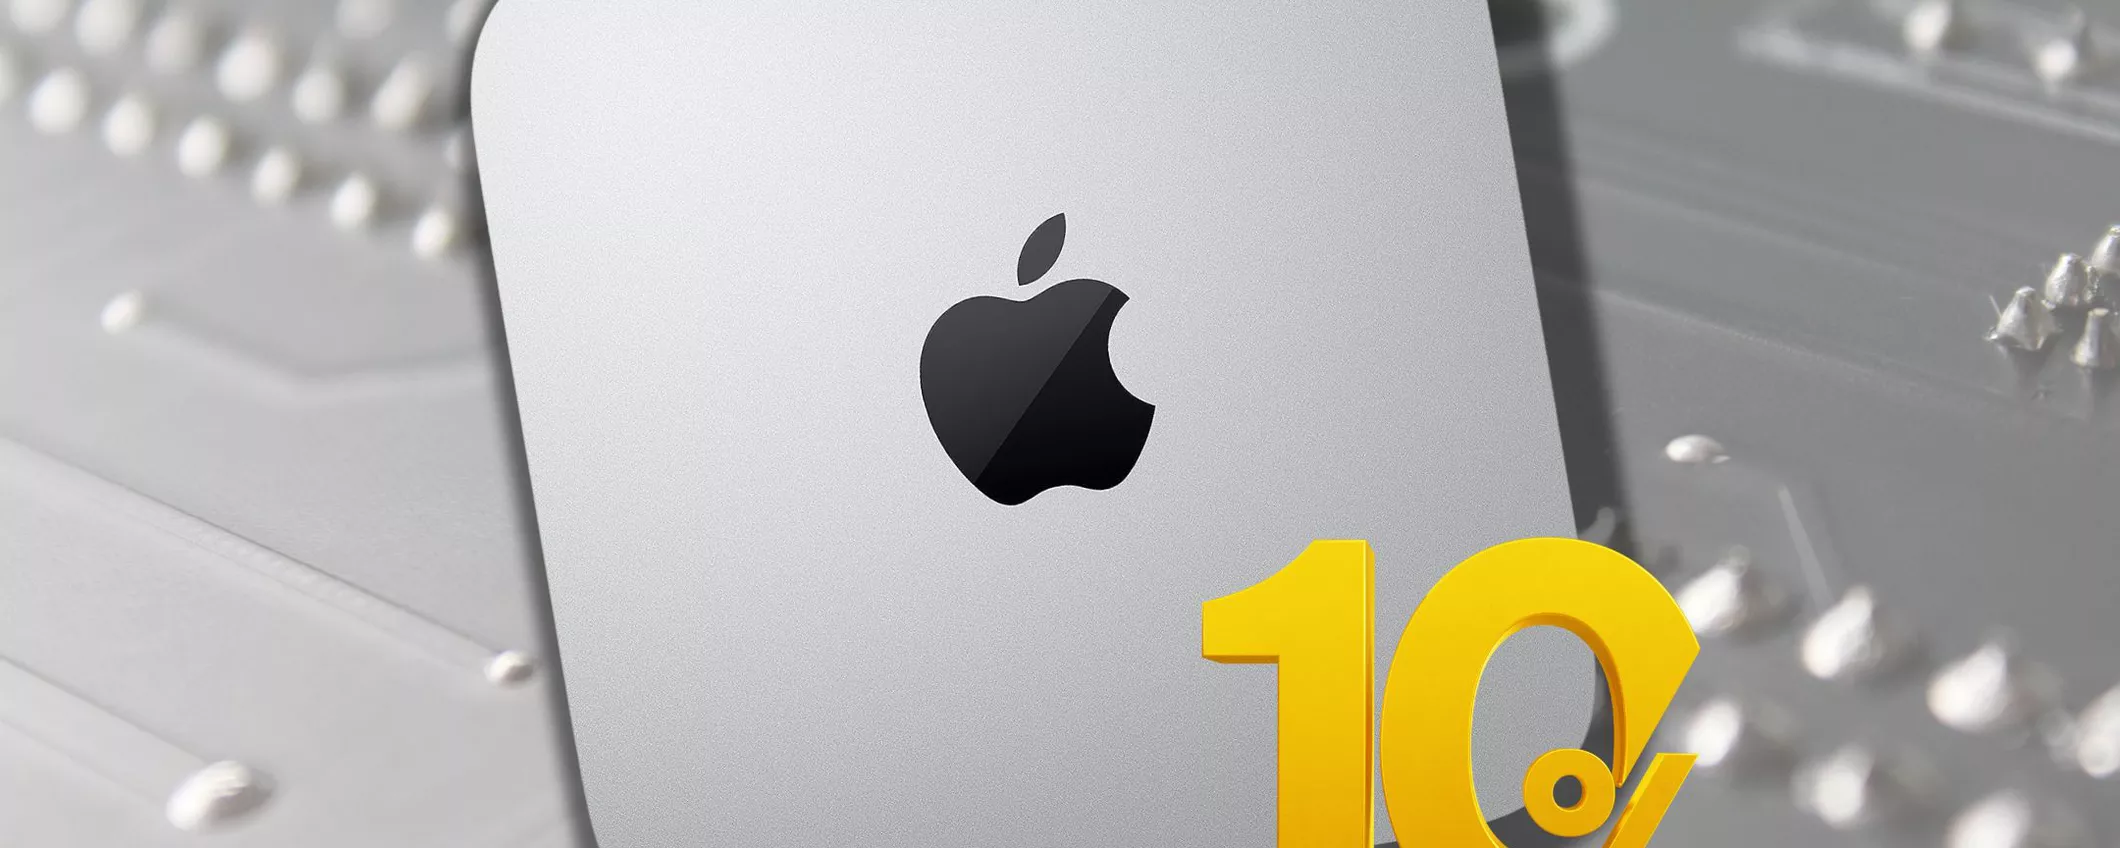 CROLLA il prezzo per Apple Mac Mini: è occasione con il 10% di sconto!